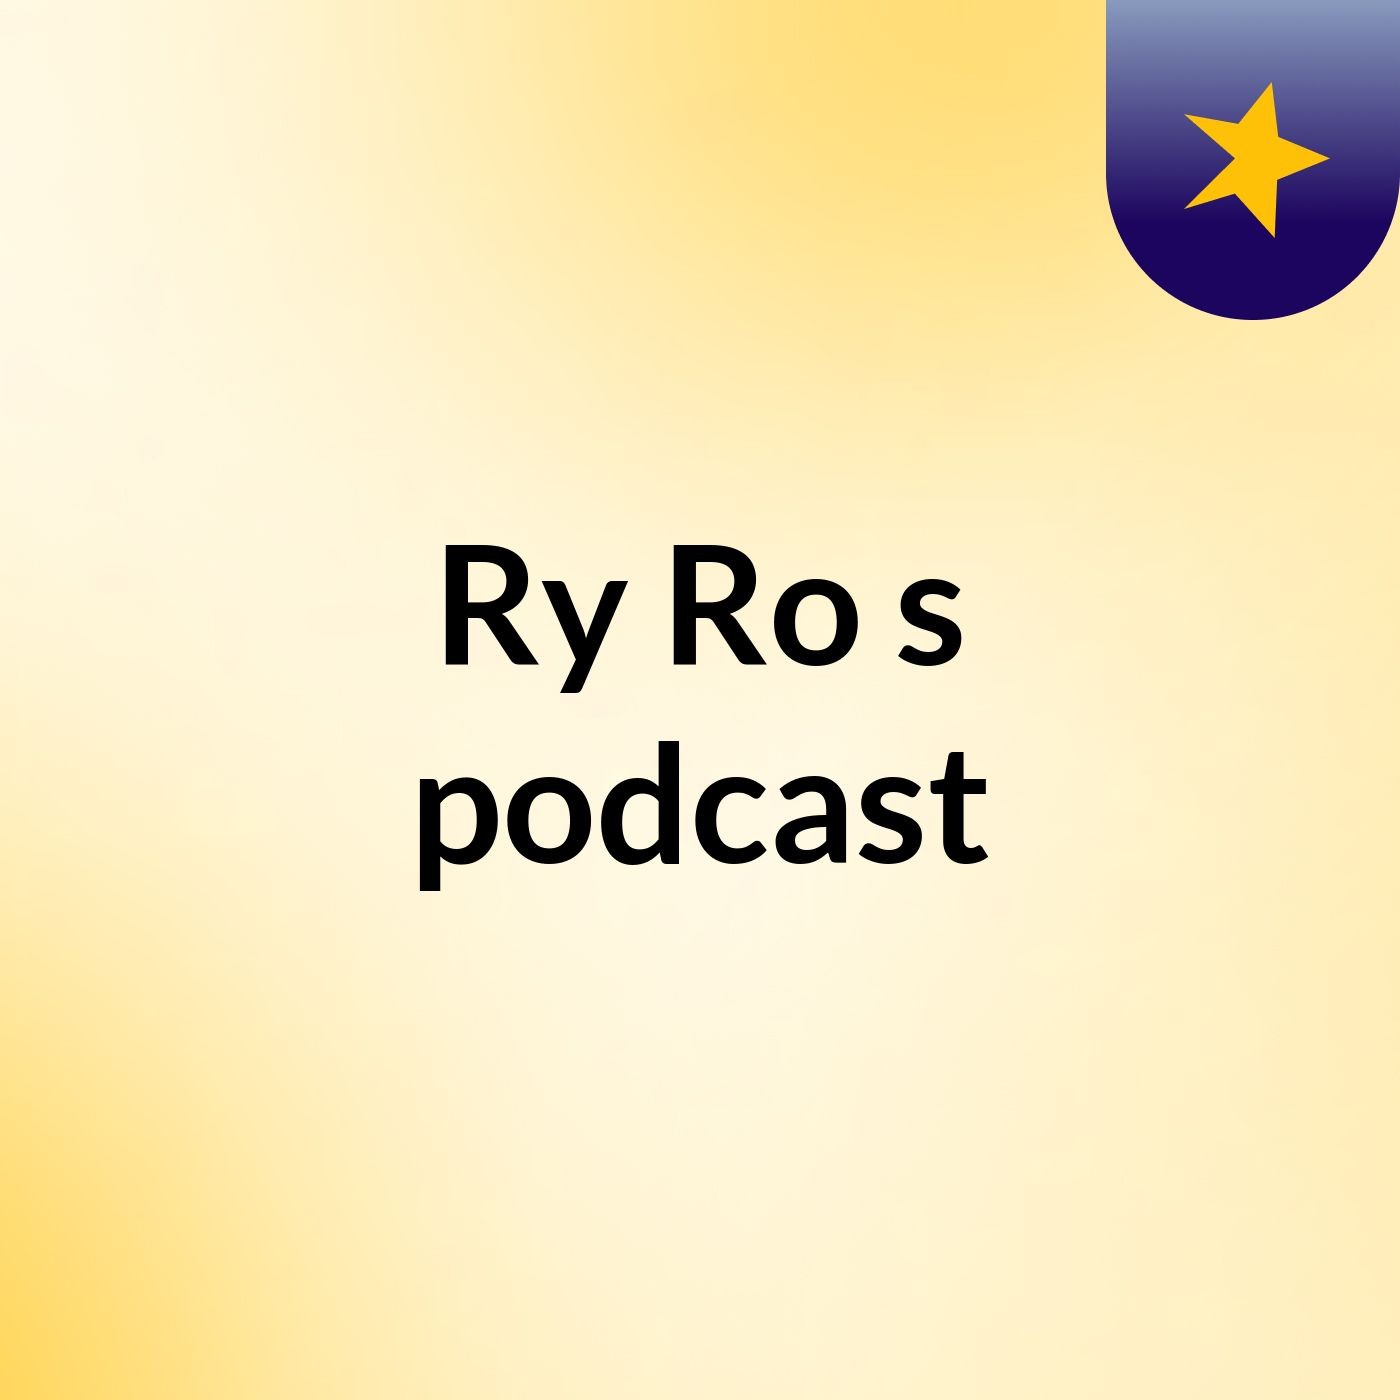 Episode 2 - Ry Ro's podcast